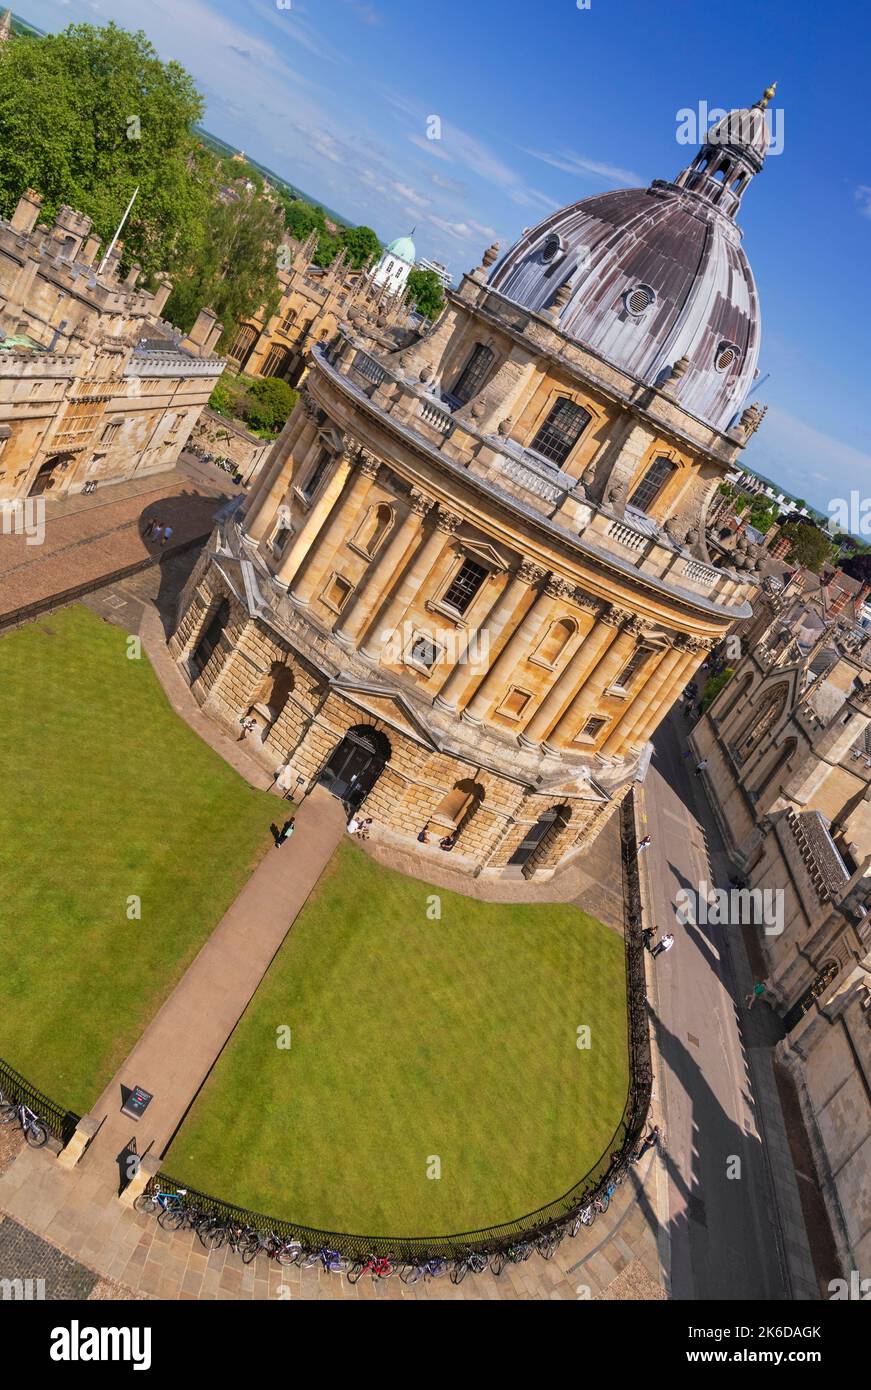 Inglaterra, Oxfordshire, Oxford, Radcliffe Cámara que es un símbolo de Oxford y una biblioteca en funcionamiento, parte del complejo central de la Biblioteca Bodleian, visto aquí desde la torre de la Iglesia de la Universidad de Santa María la Virgen. Foto de stock